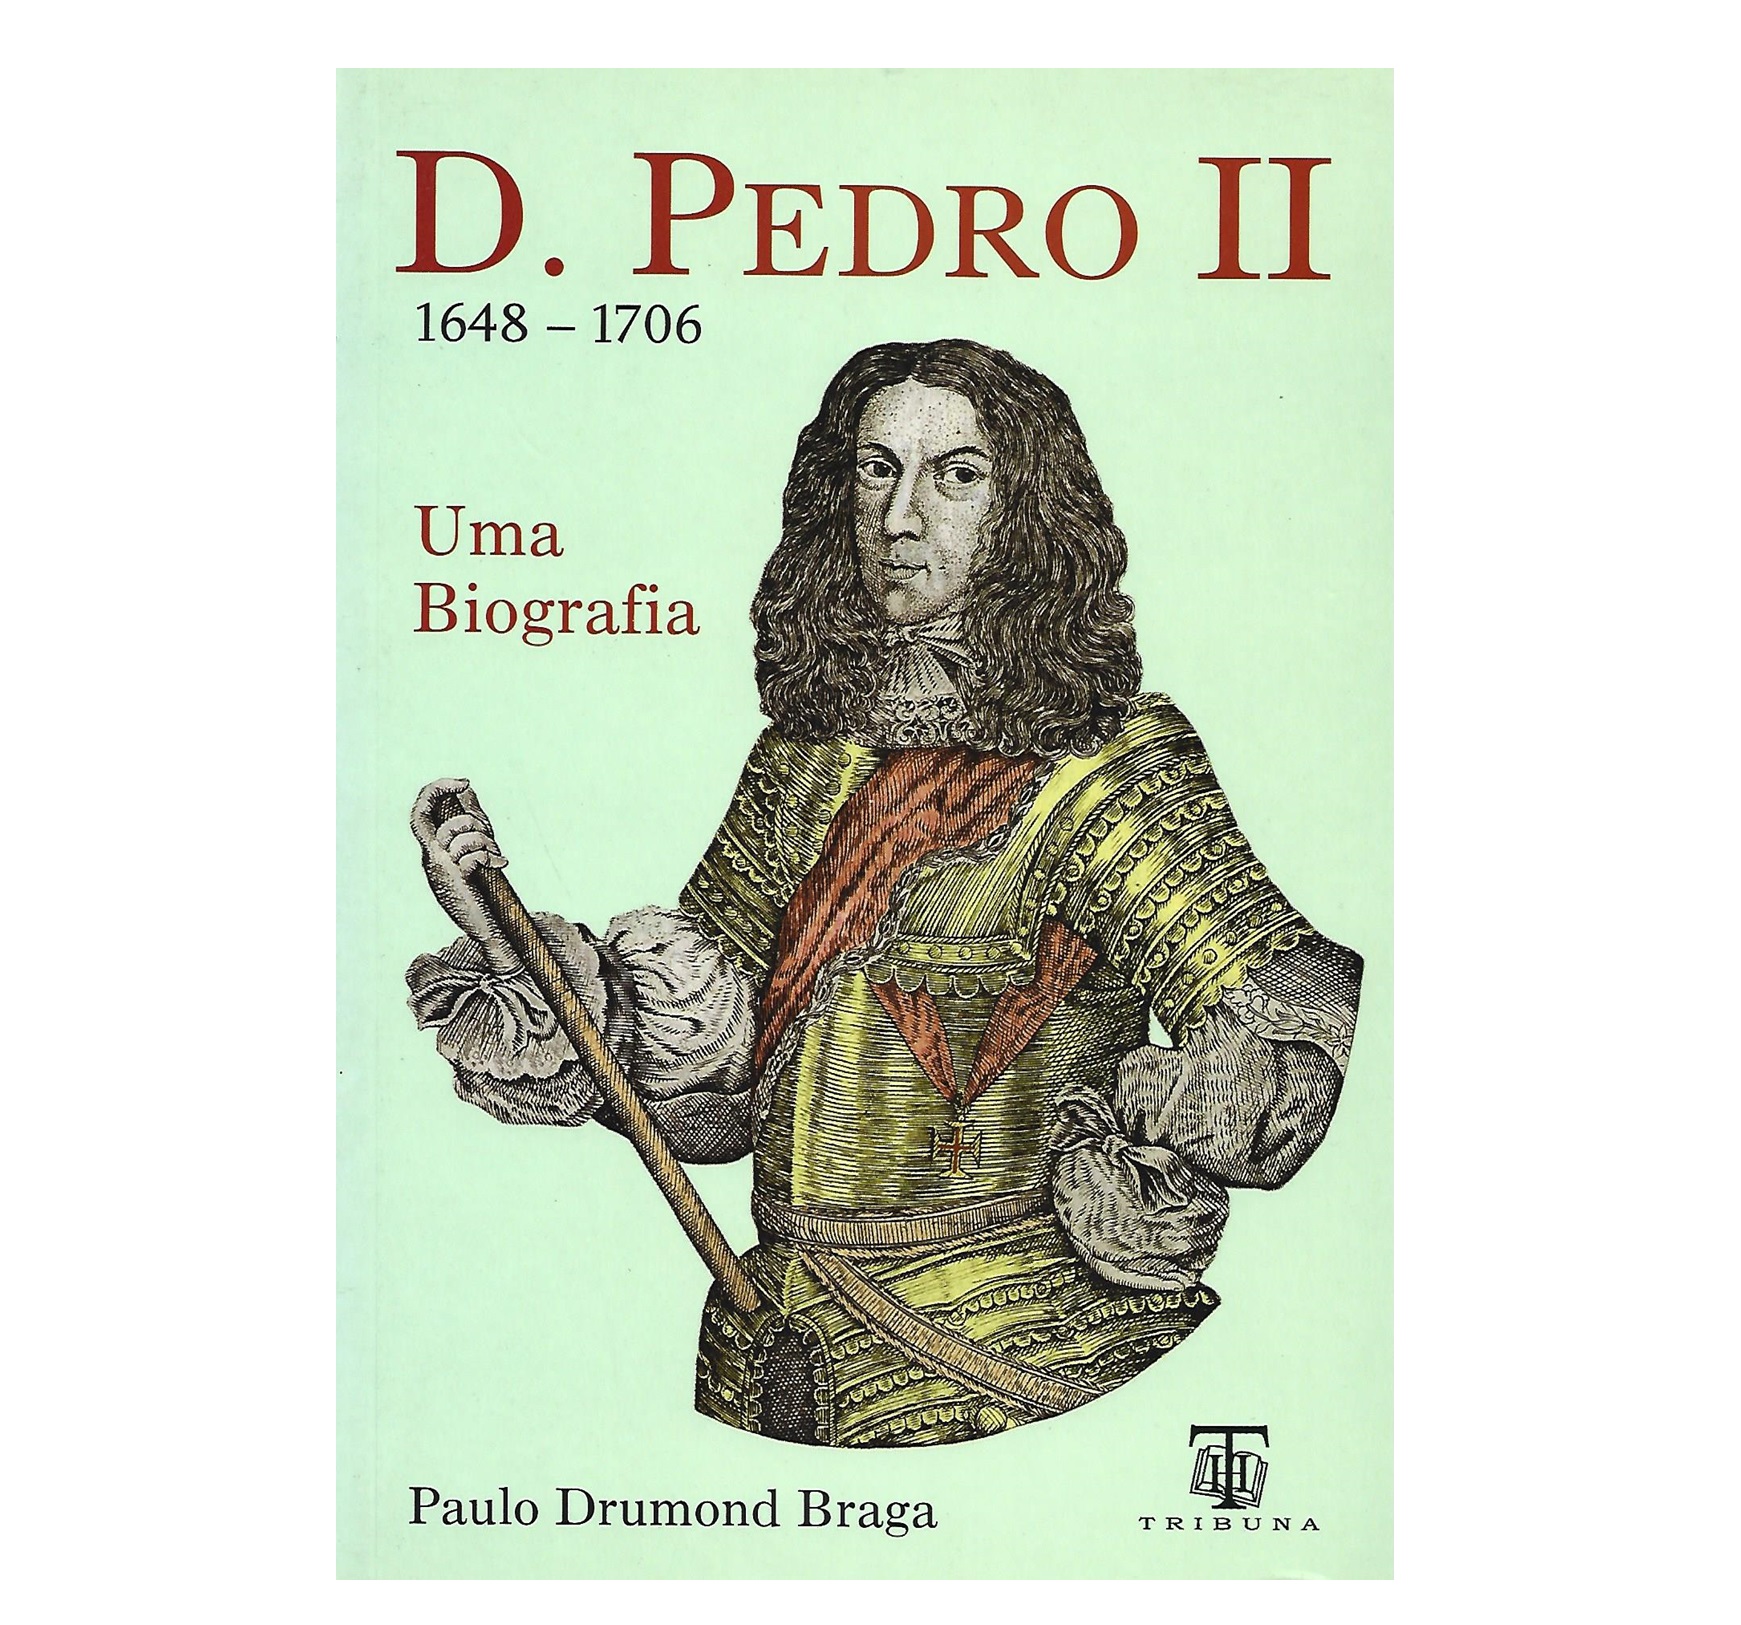  D. PEDRO II. (1648-1706). UMA BIOGRAFIA.